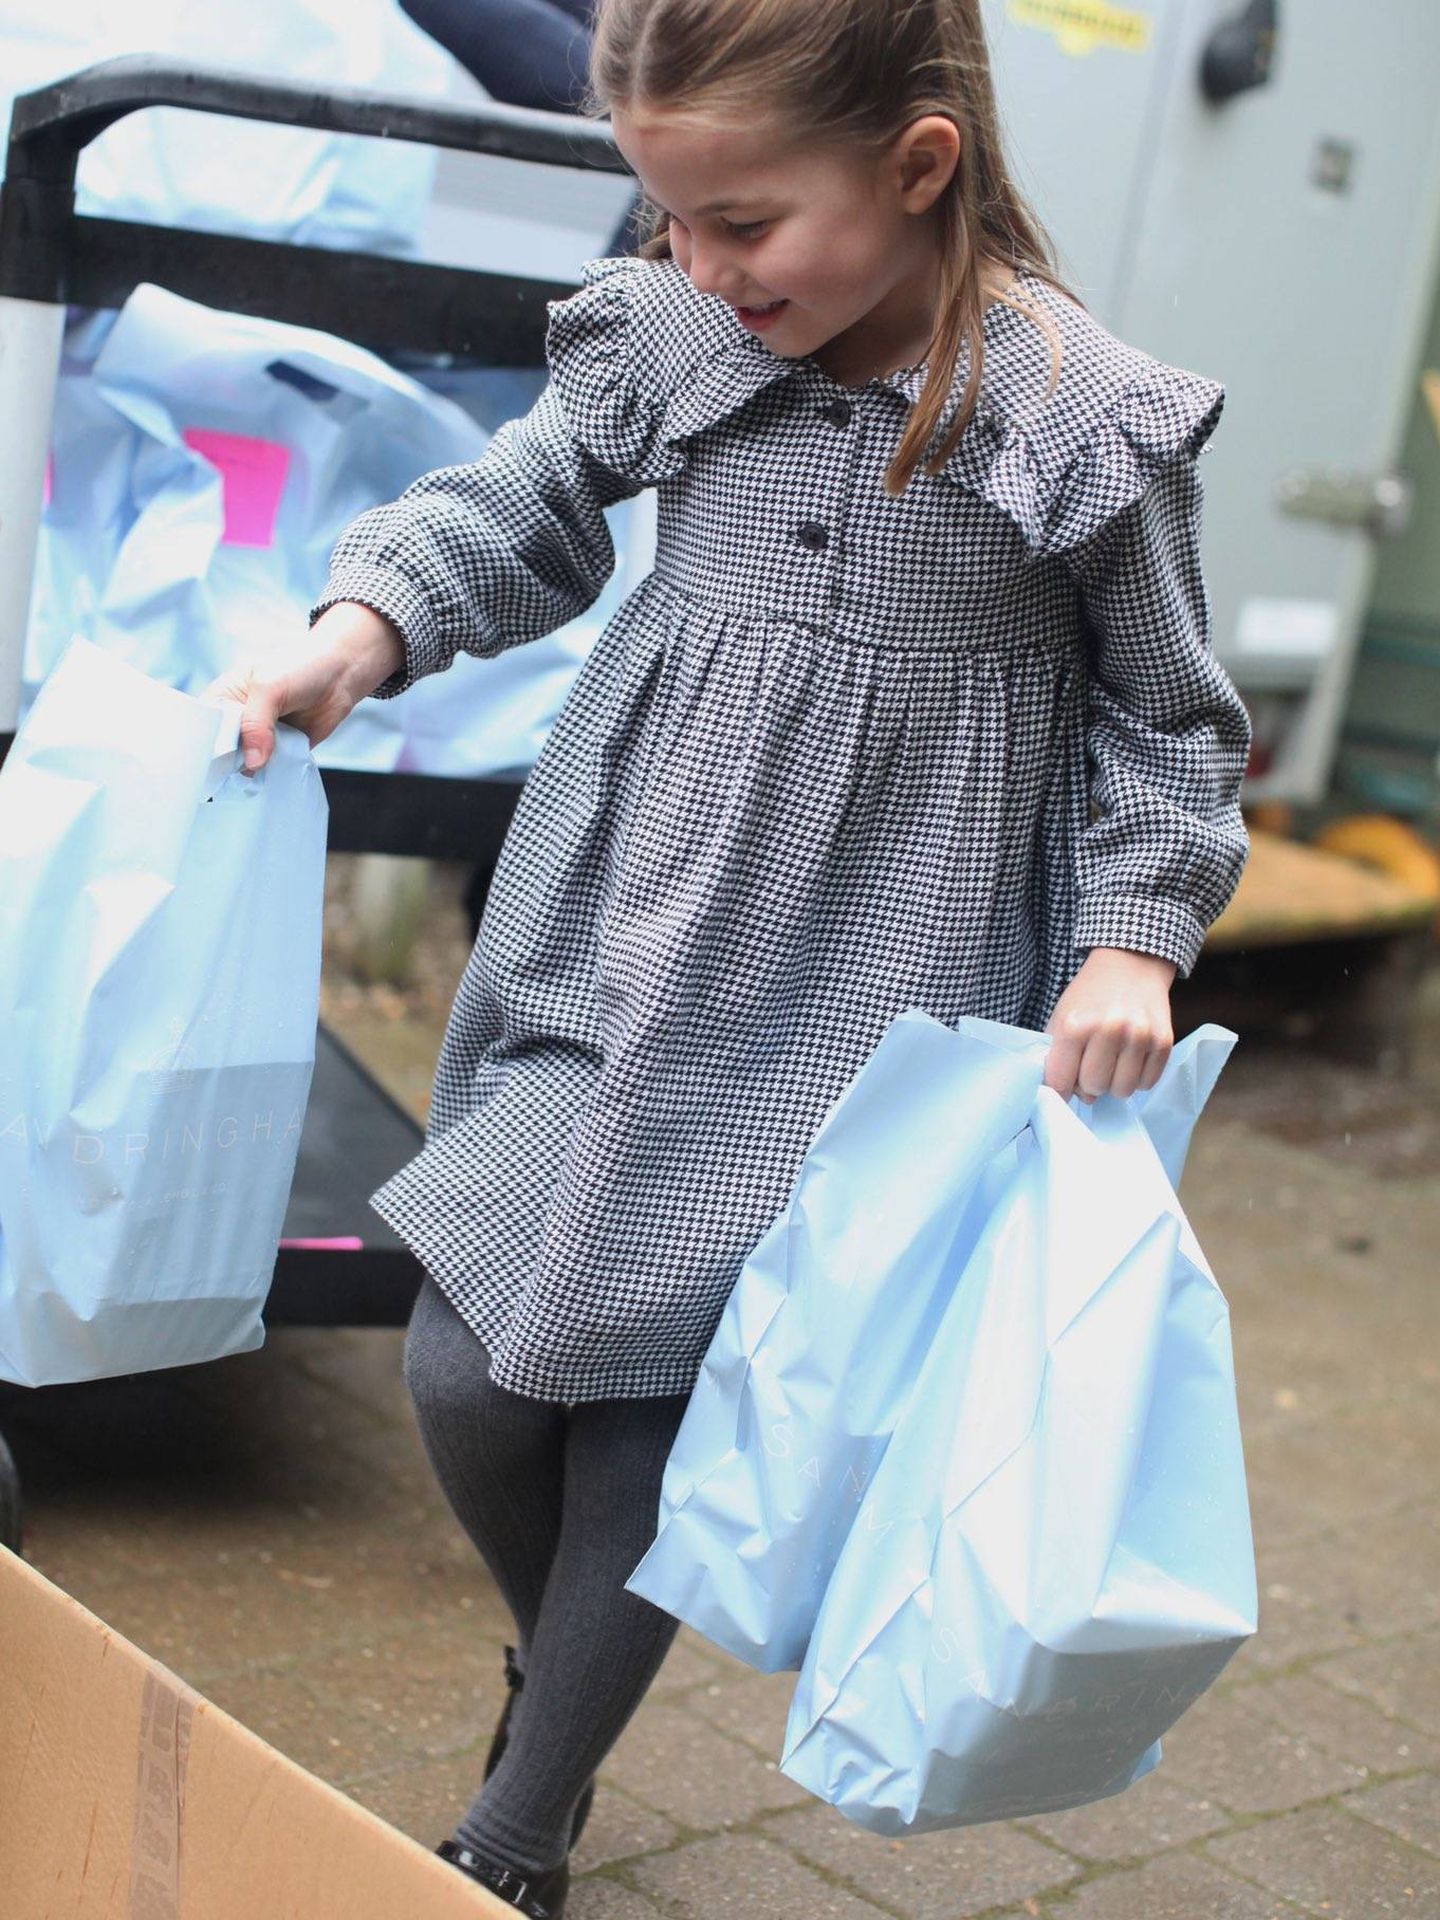 La princesa Charlotte, en las fotografías que publicaron por su cumpleaños. (Kate Middleton / Kensington Palace)